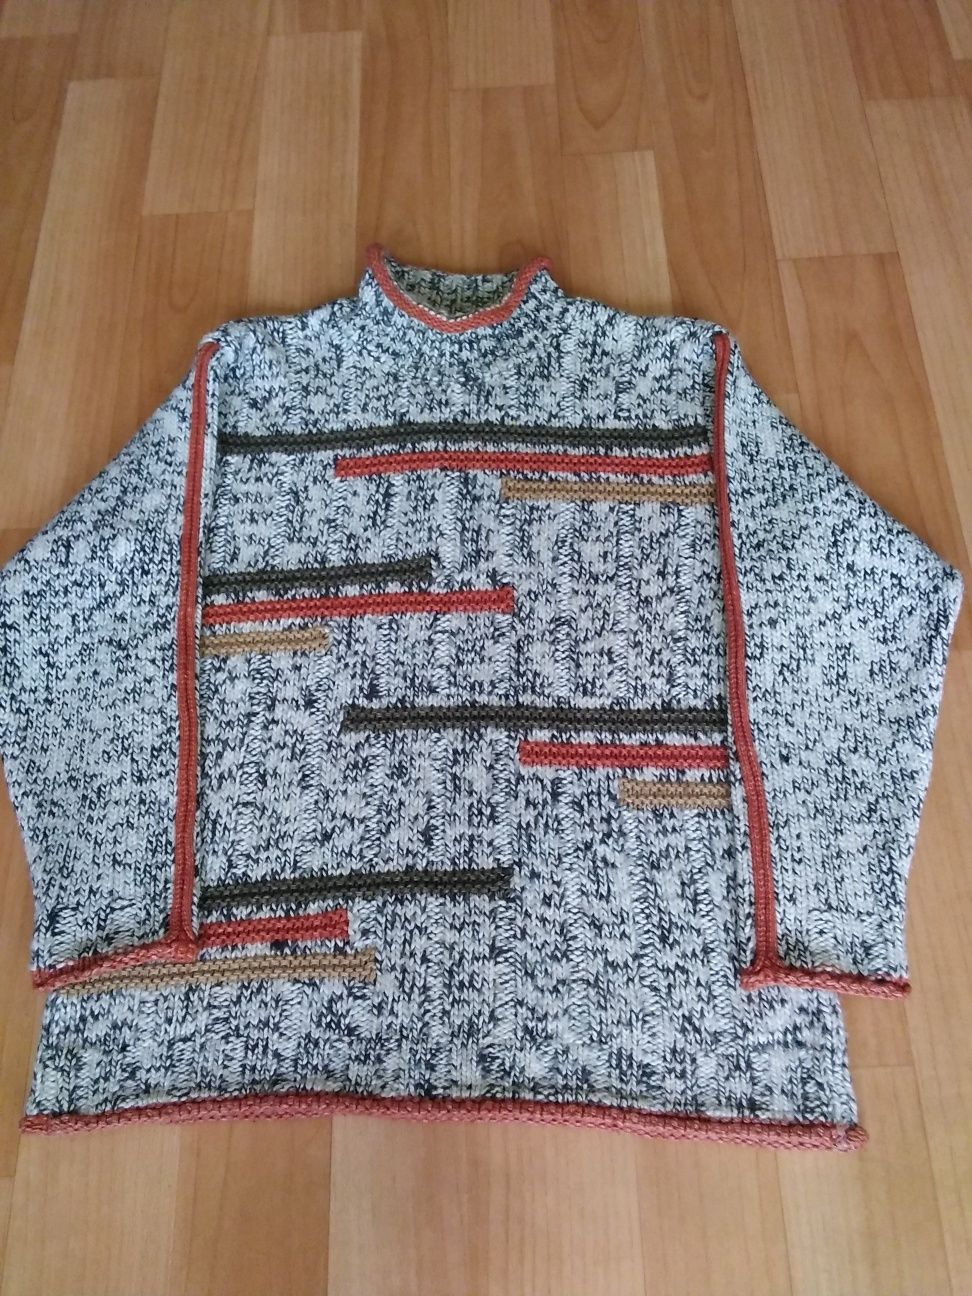 Теплий чоловічий светер ТМ REGOLA, розмірр М у гарному стані